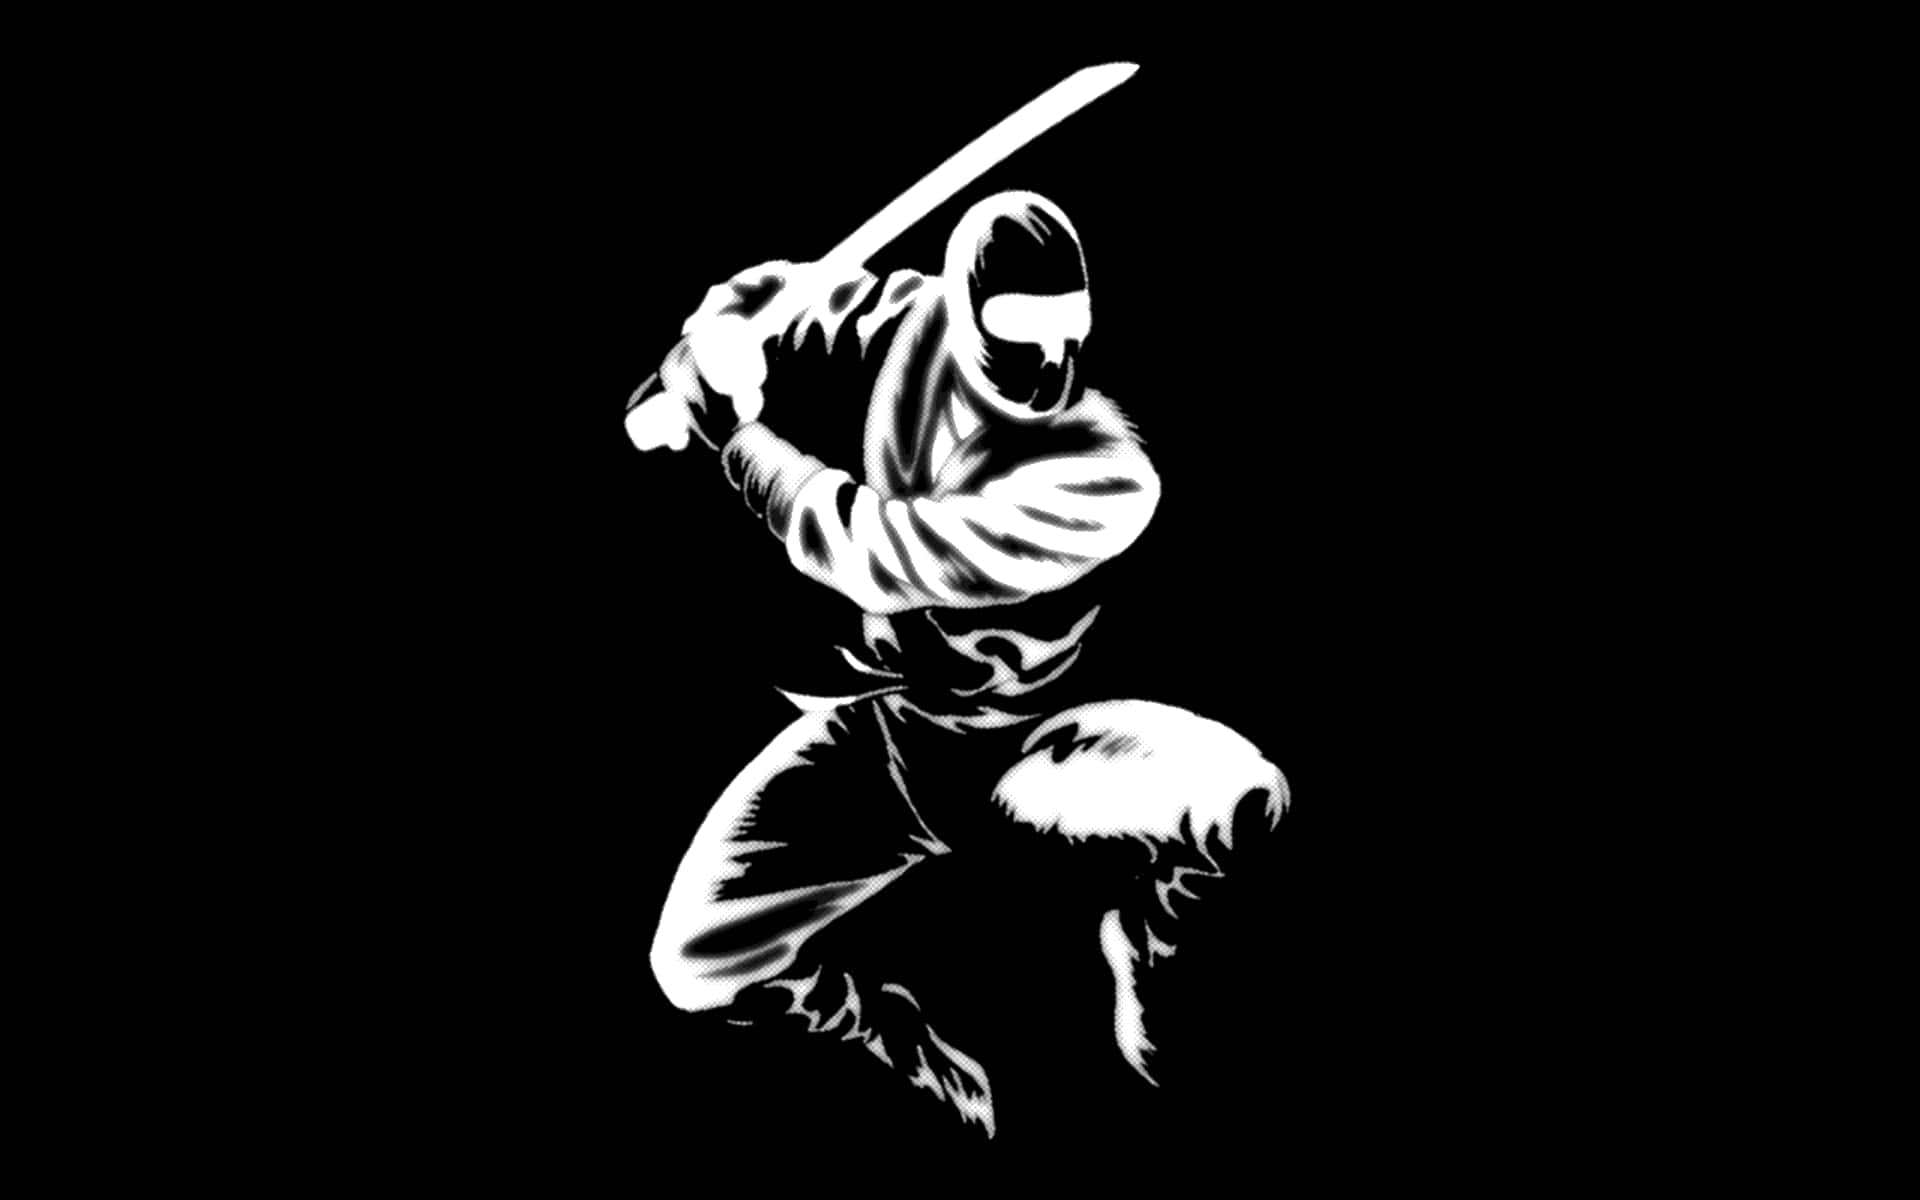 En dygtig ninja dygtig i kampsport. Wallpaper